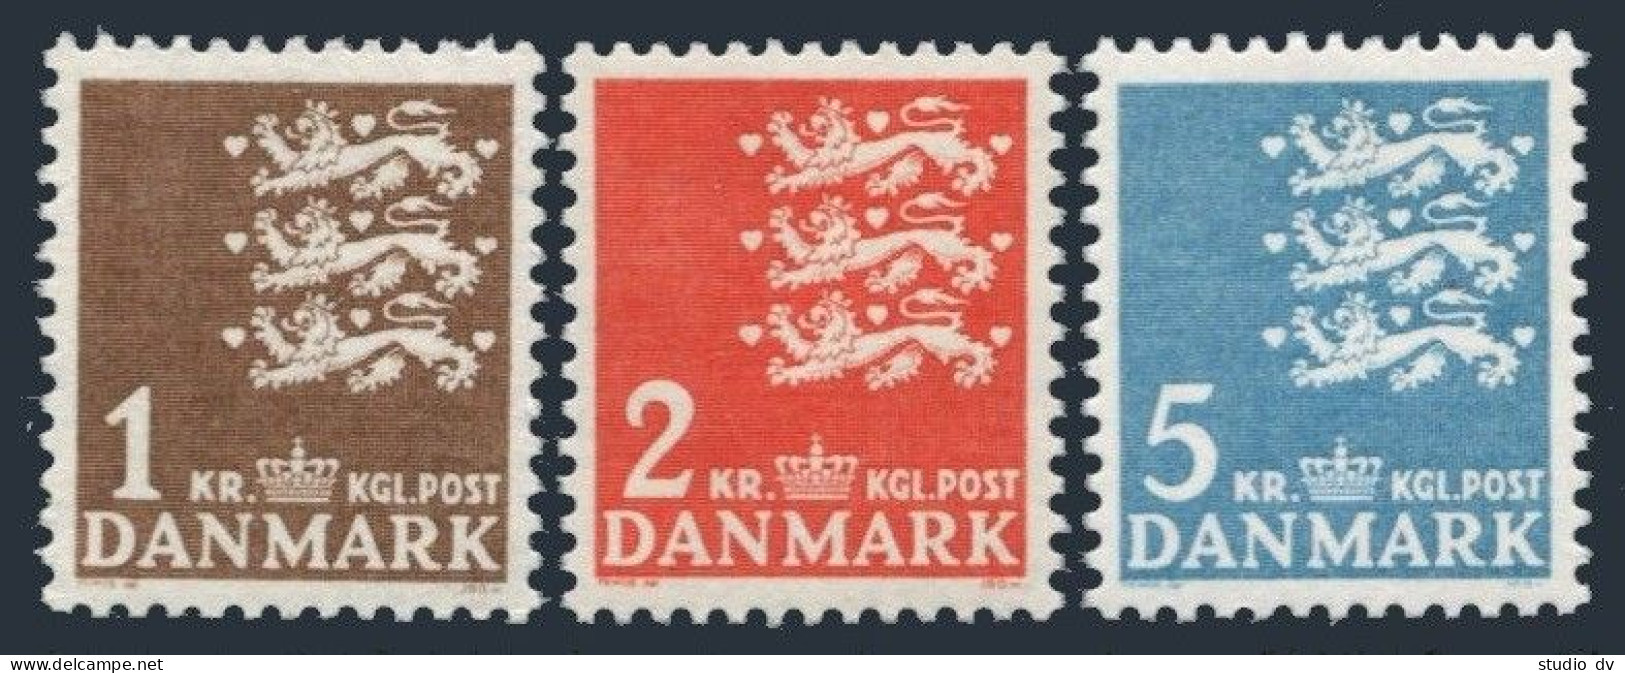 Denmark 297-299,MNH.Michel 289-291. Small State Seal.1946-1947. - Ongebruikt